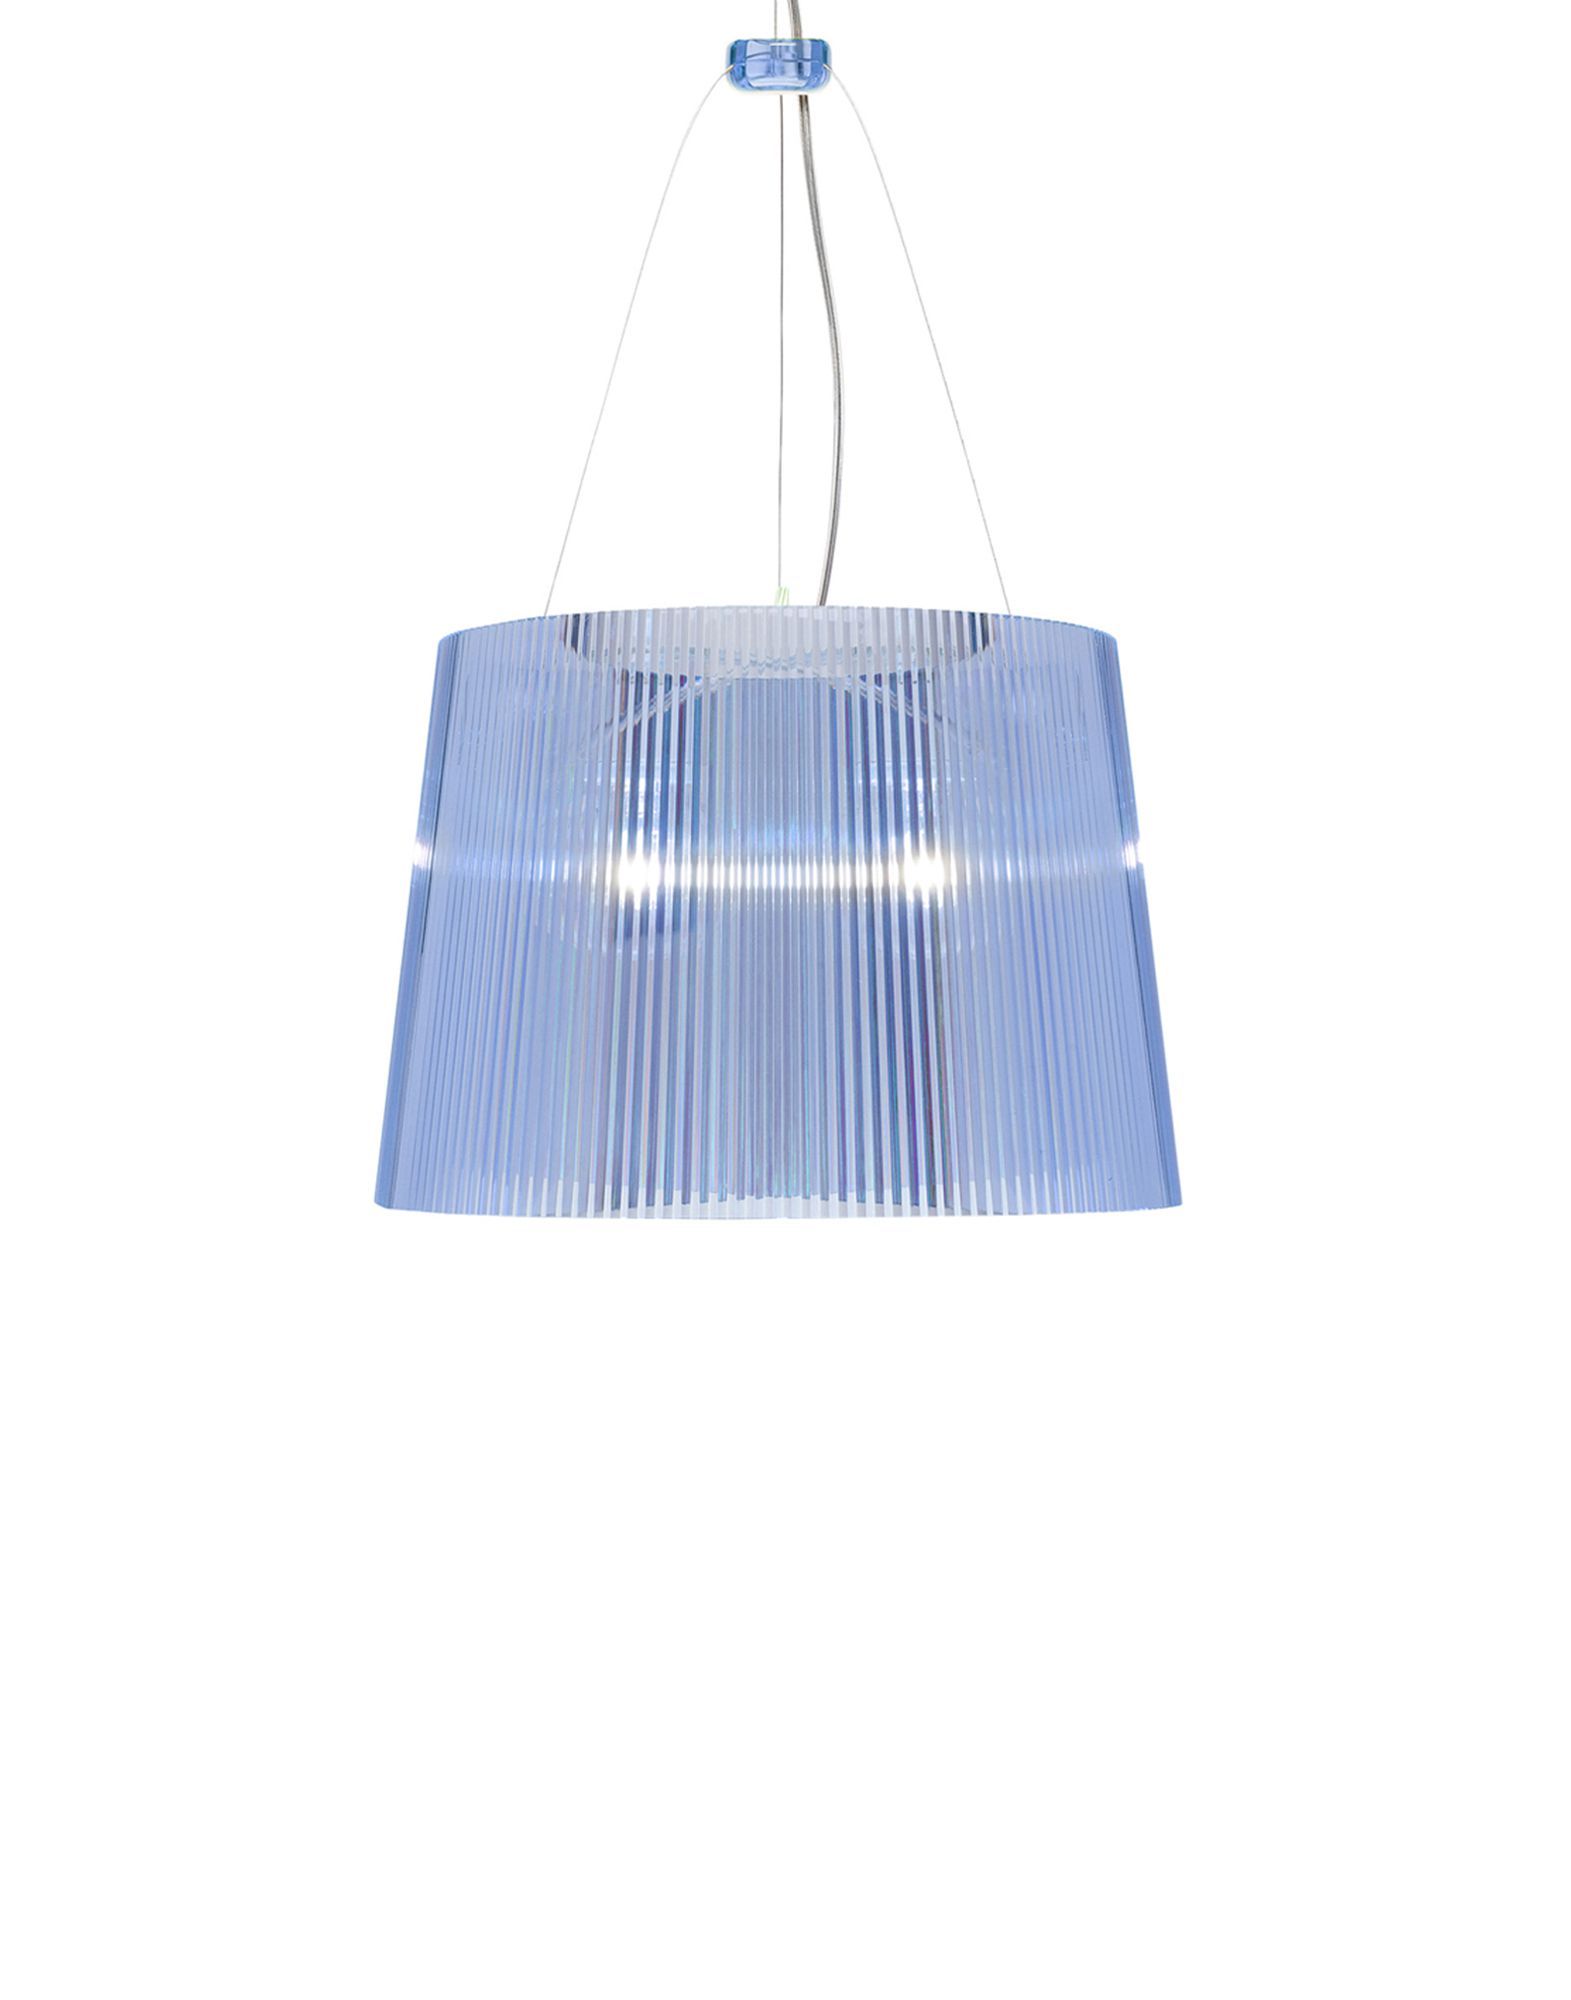 Suspensie Kartell Ge’ design Ferruccio Laviani E27 max 70W h37cm bleu transparent